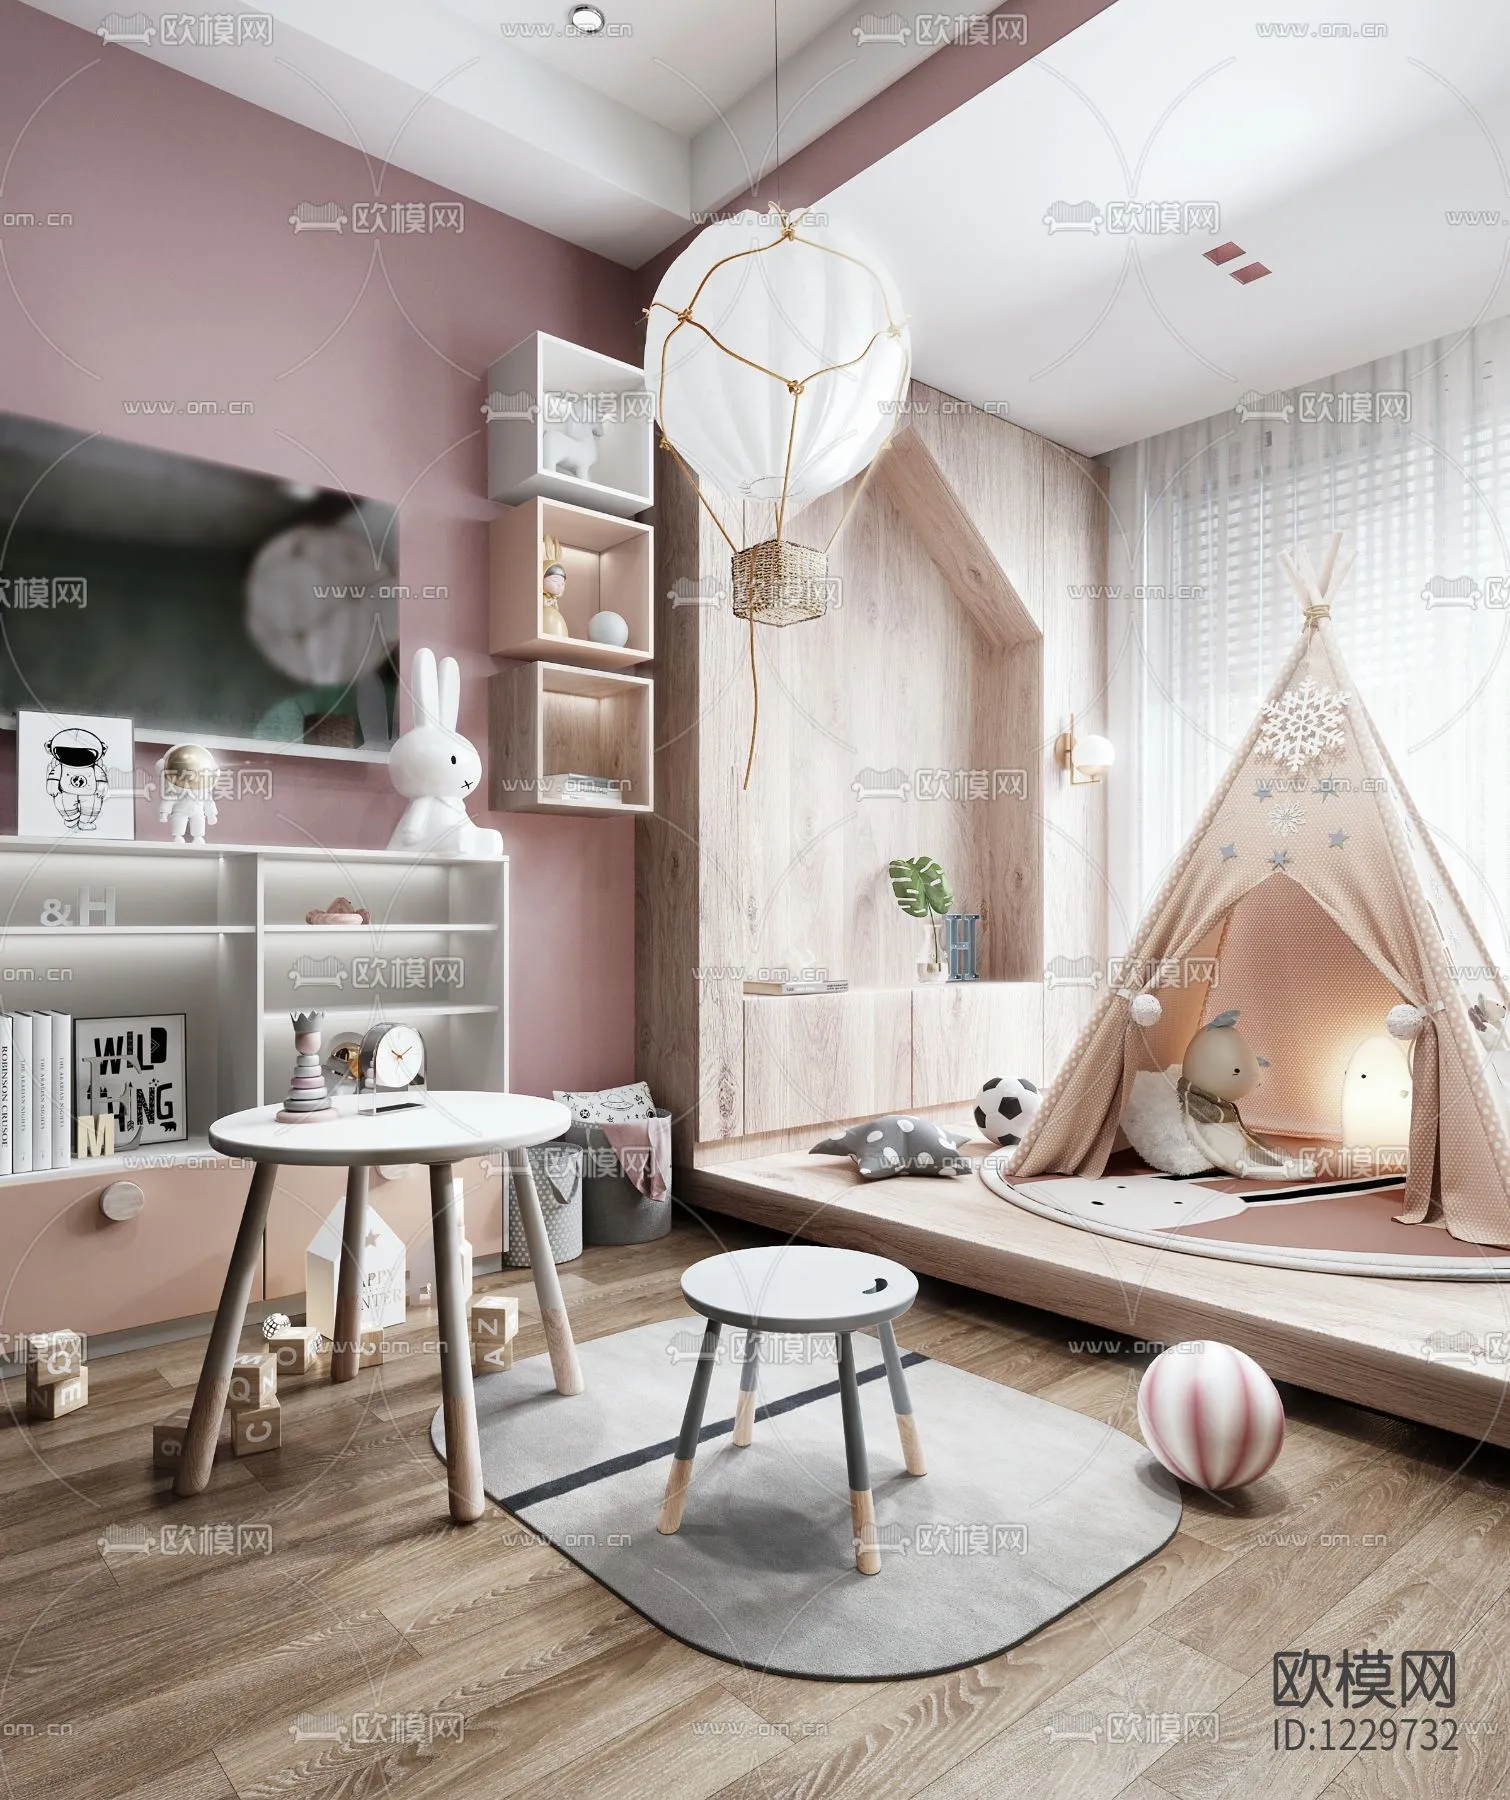 Children Room 3D Scenes – 0361